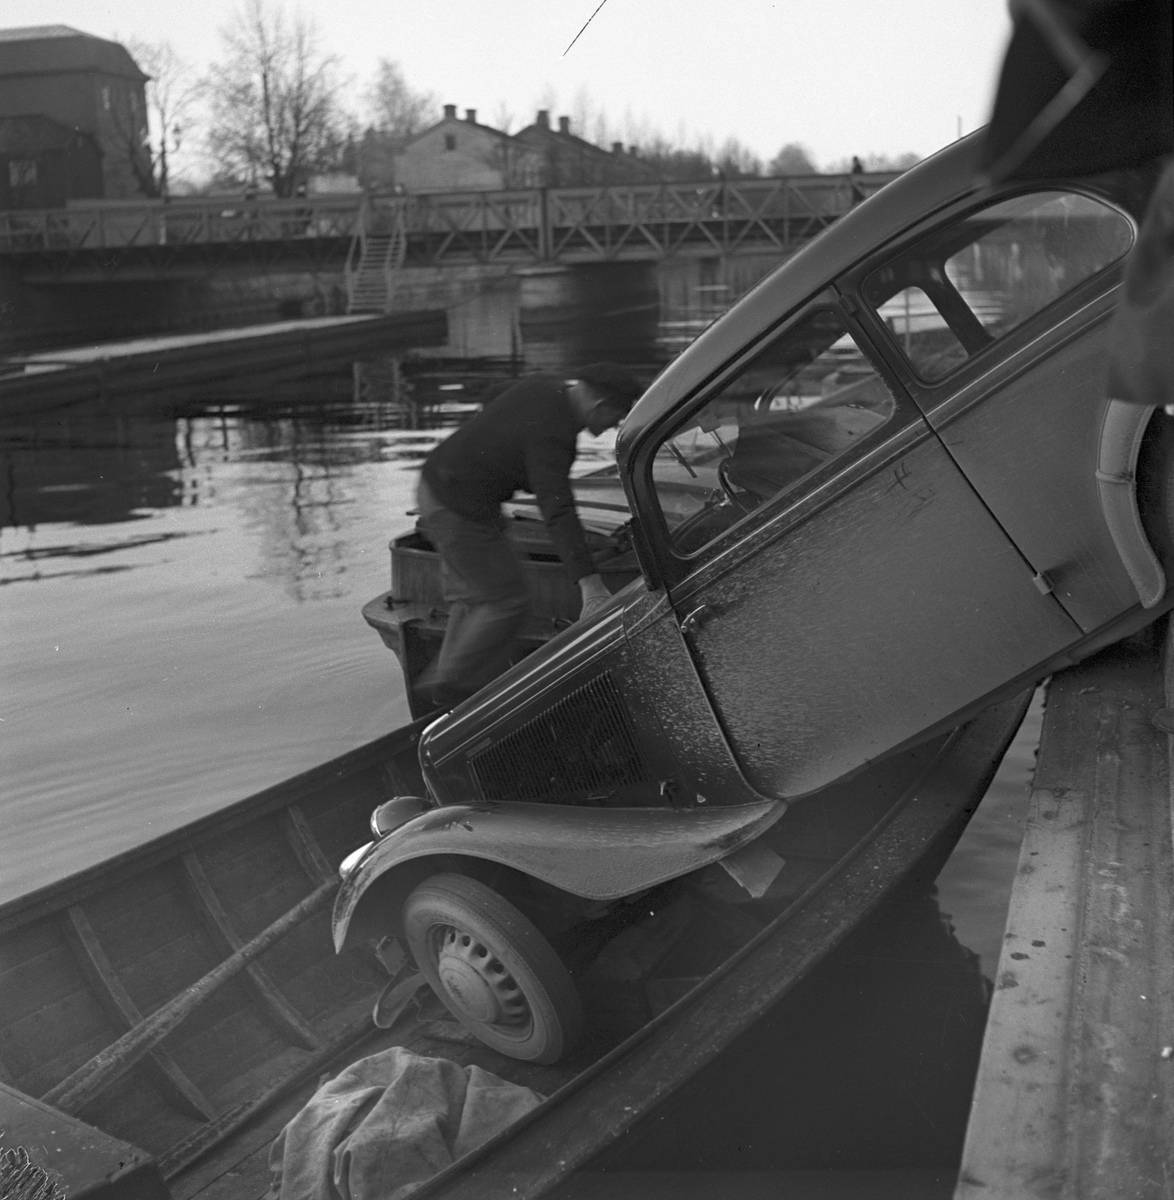 Bilolycka. Bil som kör ner i en båt, 1939. Bilen var en Adler av årsmodell 1936 eller 1937.

